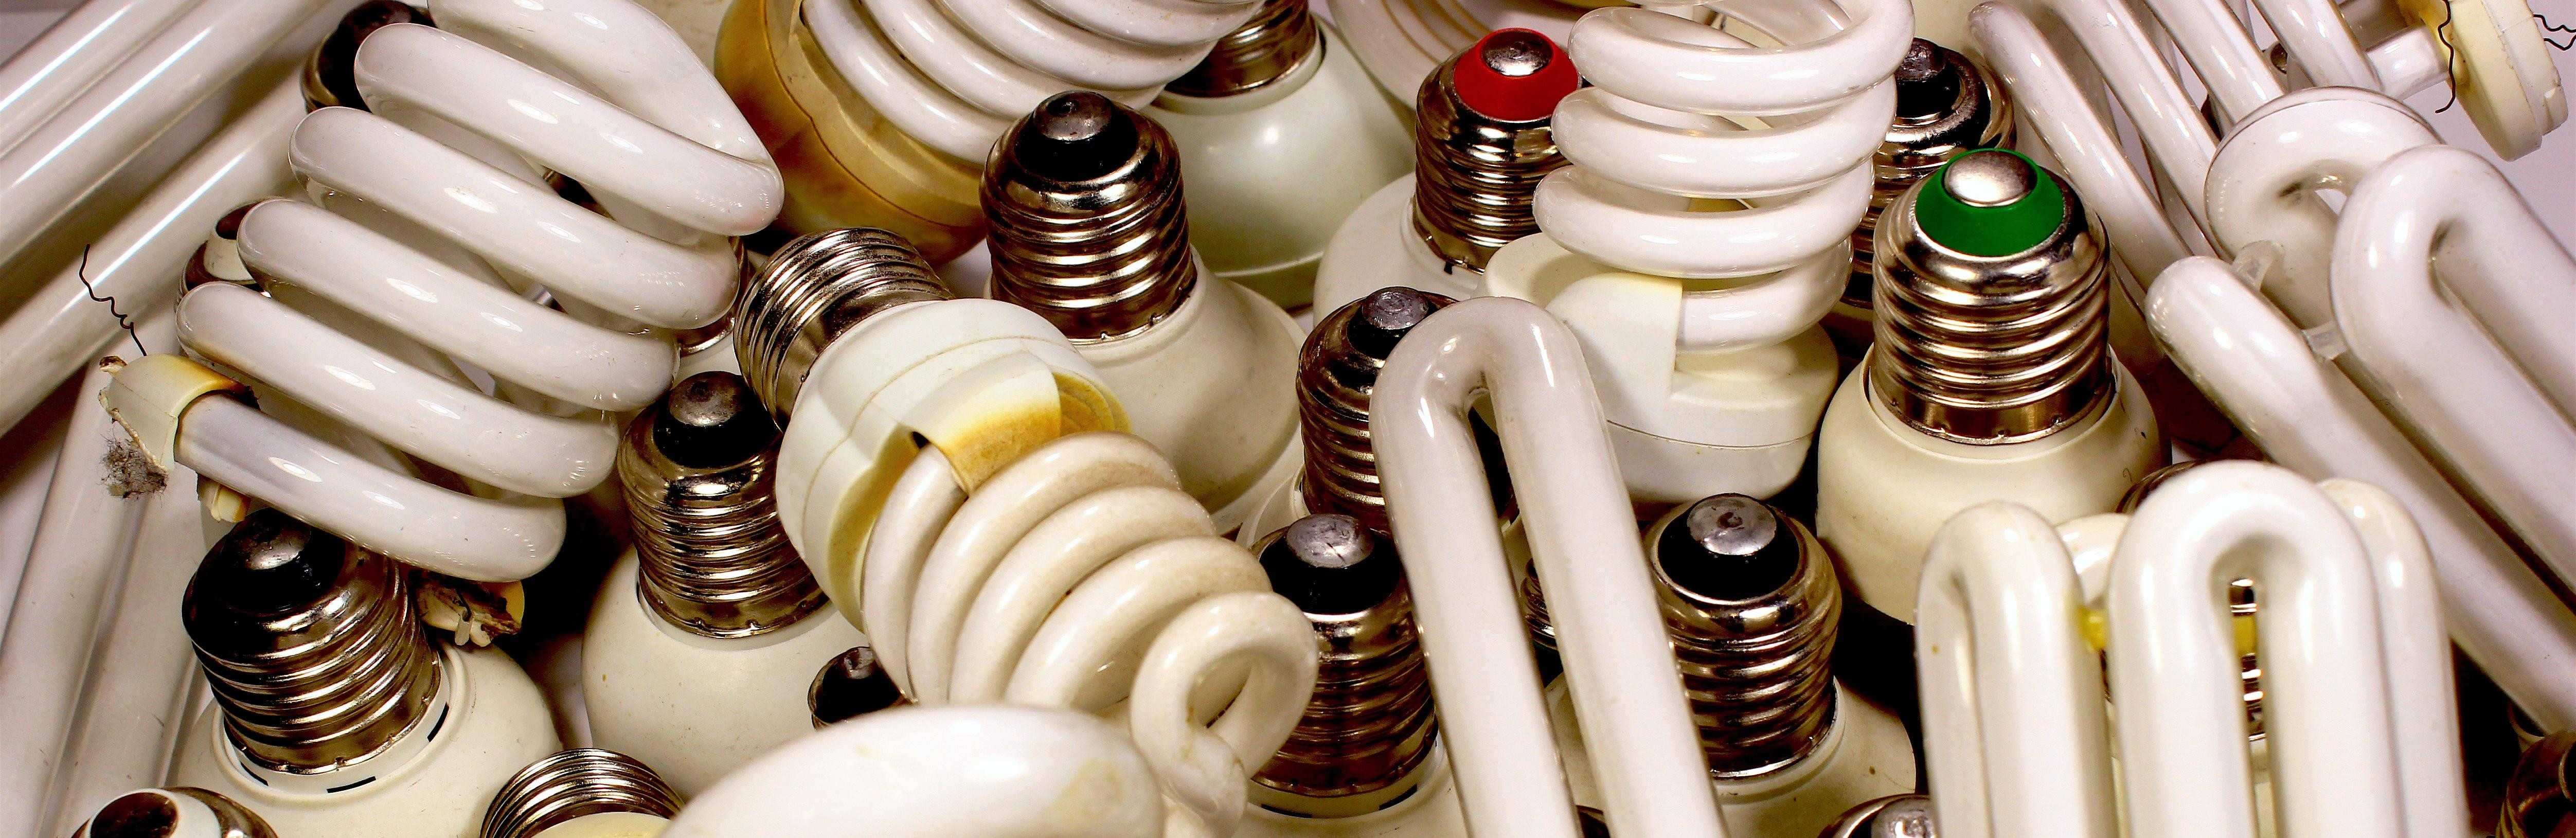 Утилизация люминесцентных ламп: куда сдавать и как утилизируют ртутные (ртутьсодержащие), энергосберегающие лампочки